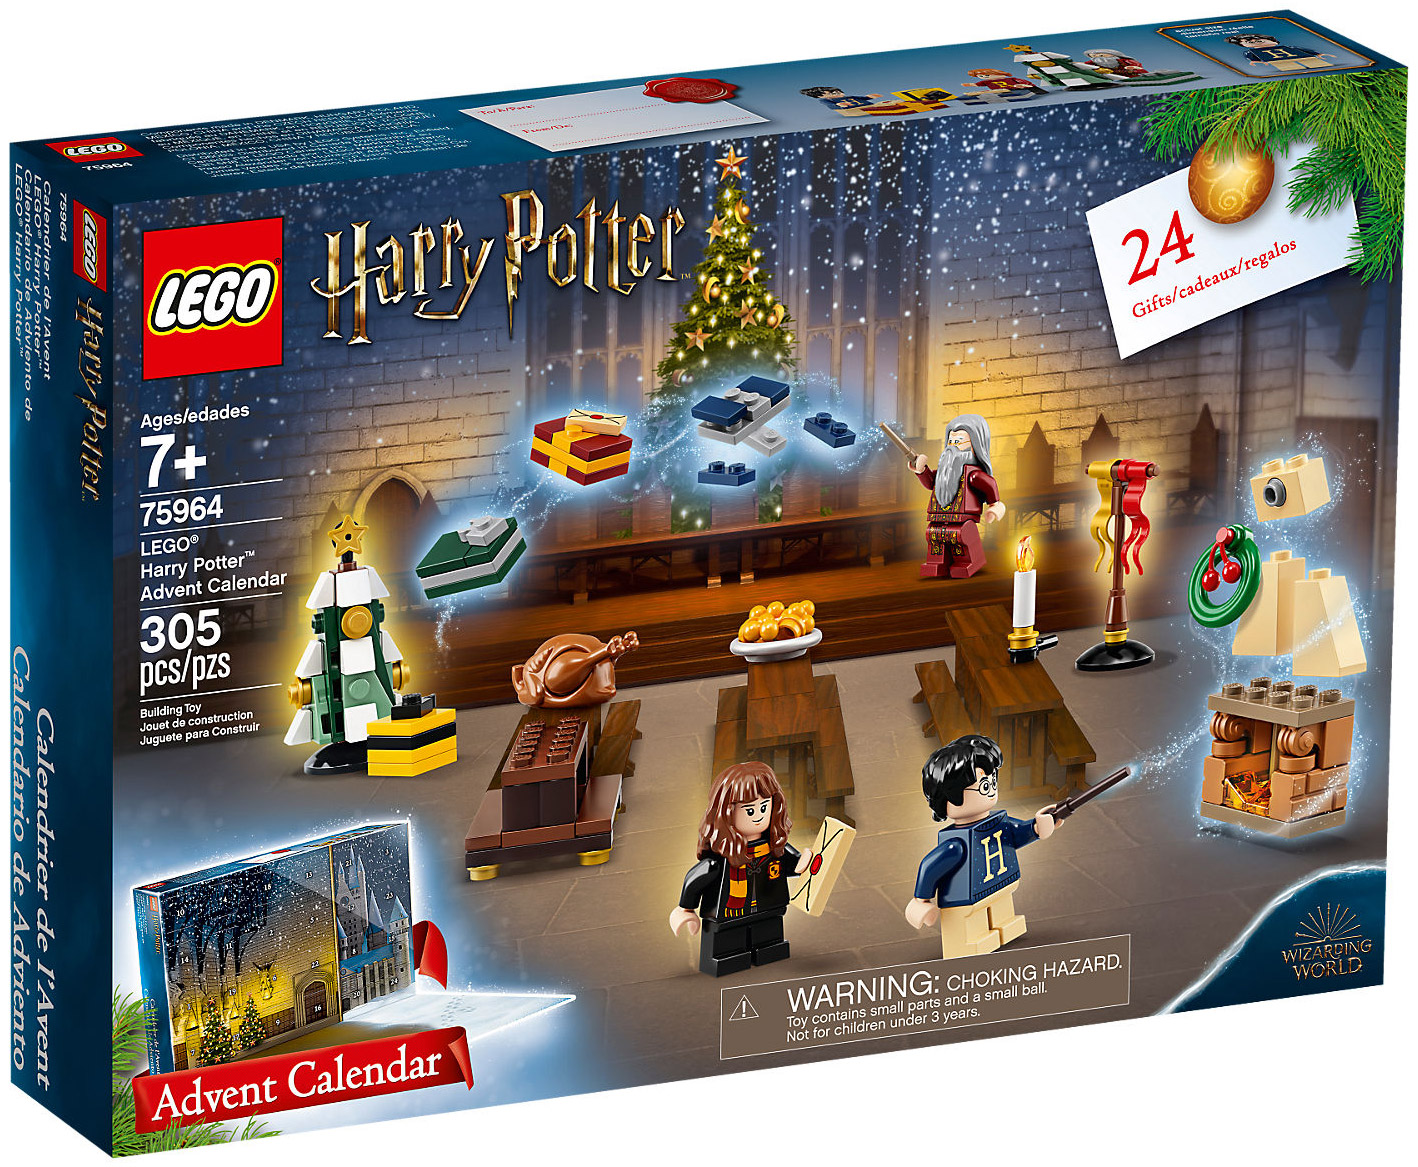 LEGO Harry Potter 75964 pas cher, Calendrier de l'Avent LEGO Harry Potter  2019